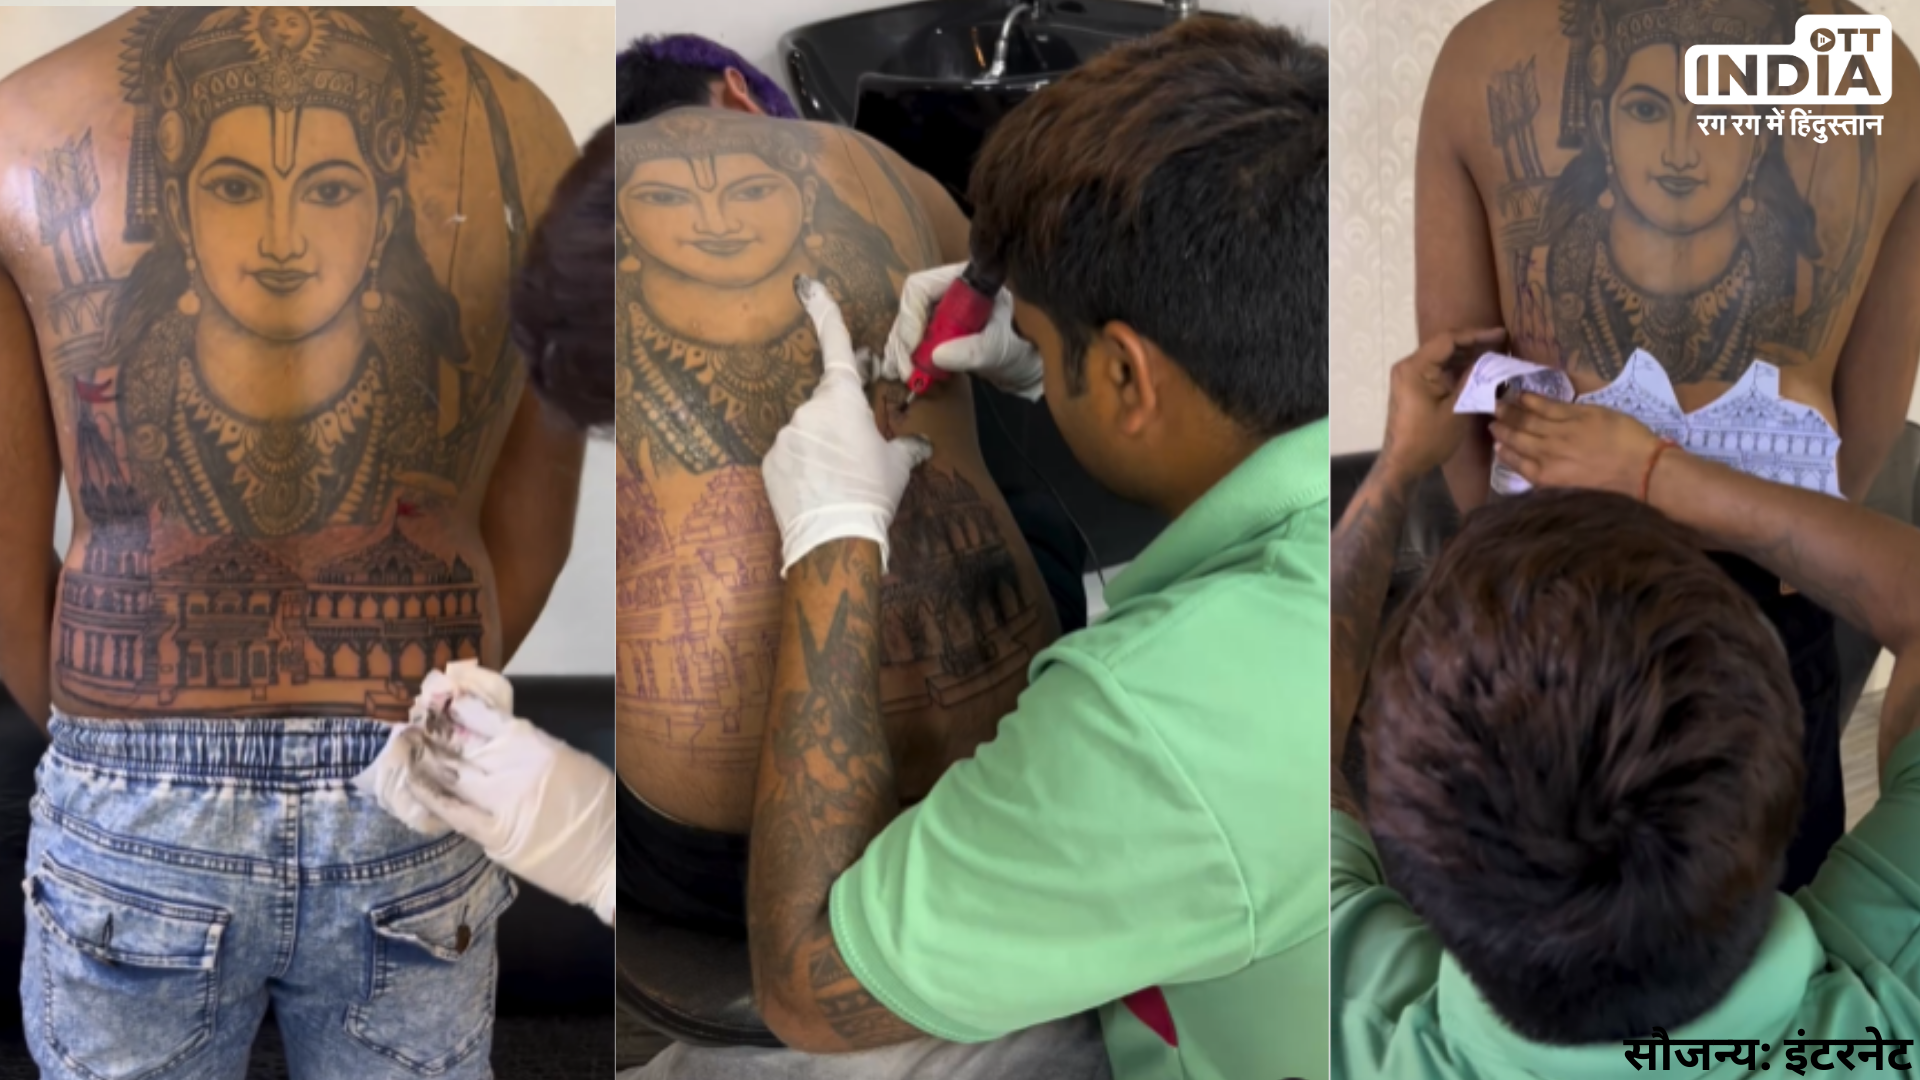 Ram Mandir Tattoo: शरीर के इस हिस्से पर भगवान राम और राम मंदिर का टैटू बनवाना शख्स को पड़ा महंगा, लोगों ने जमकर किया ट्रोल